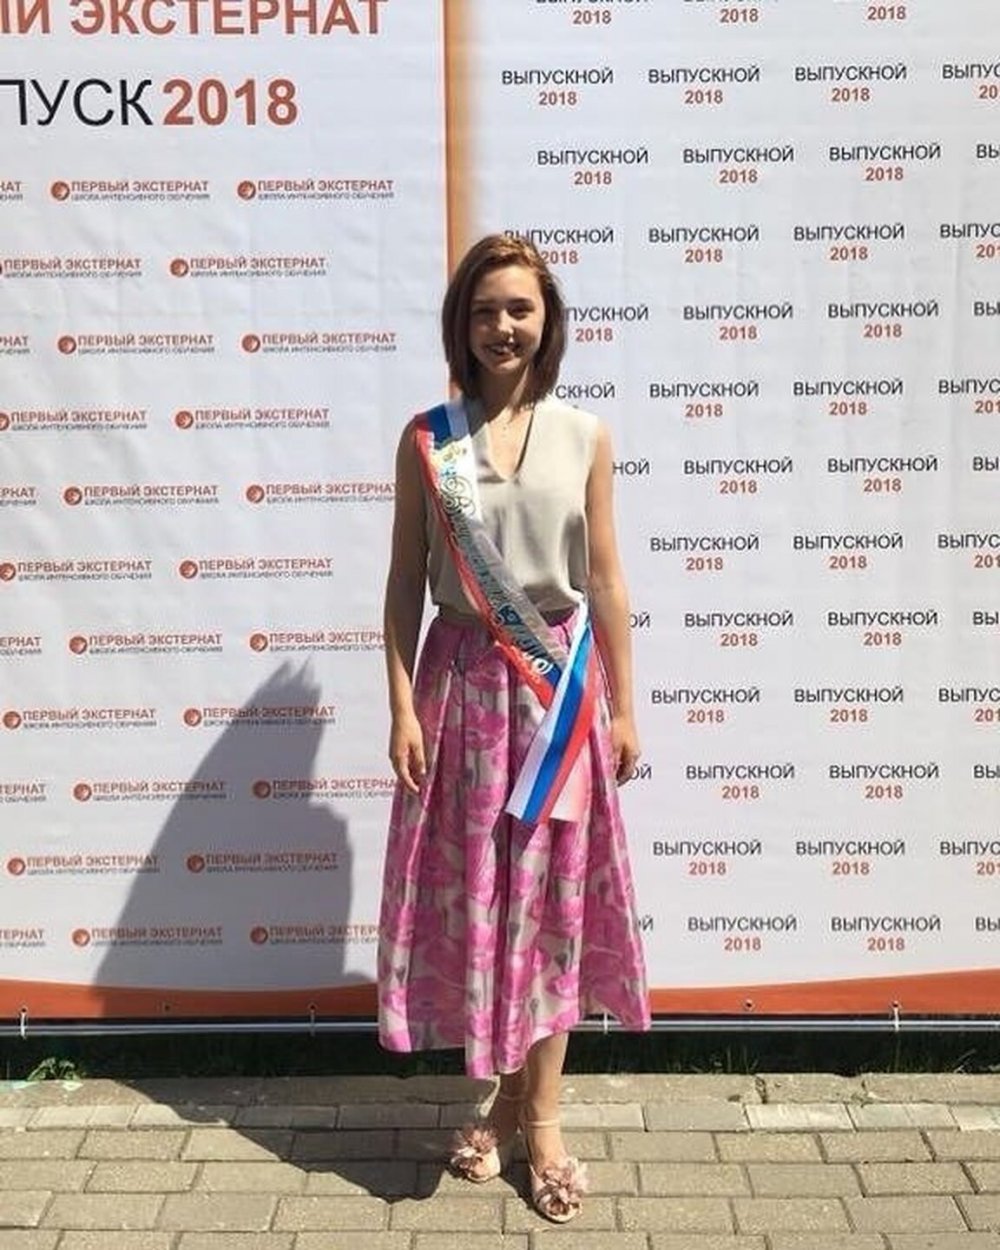 Екатерина Старшова 2018